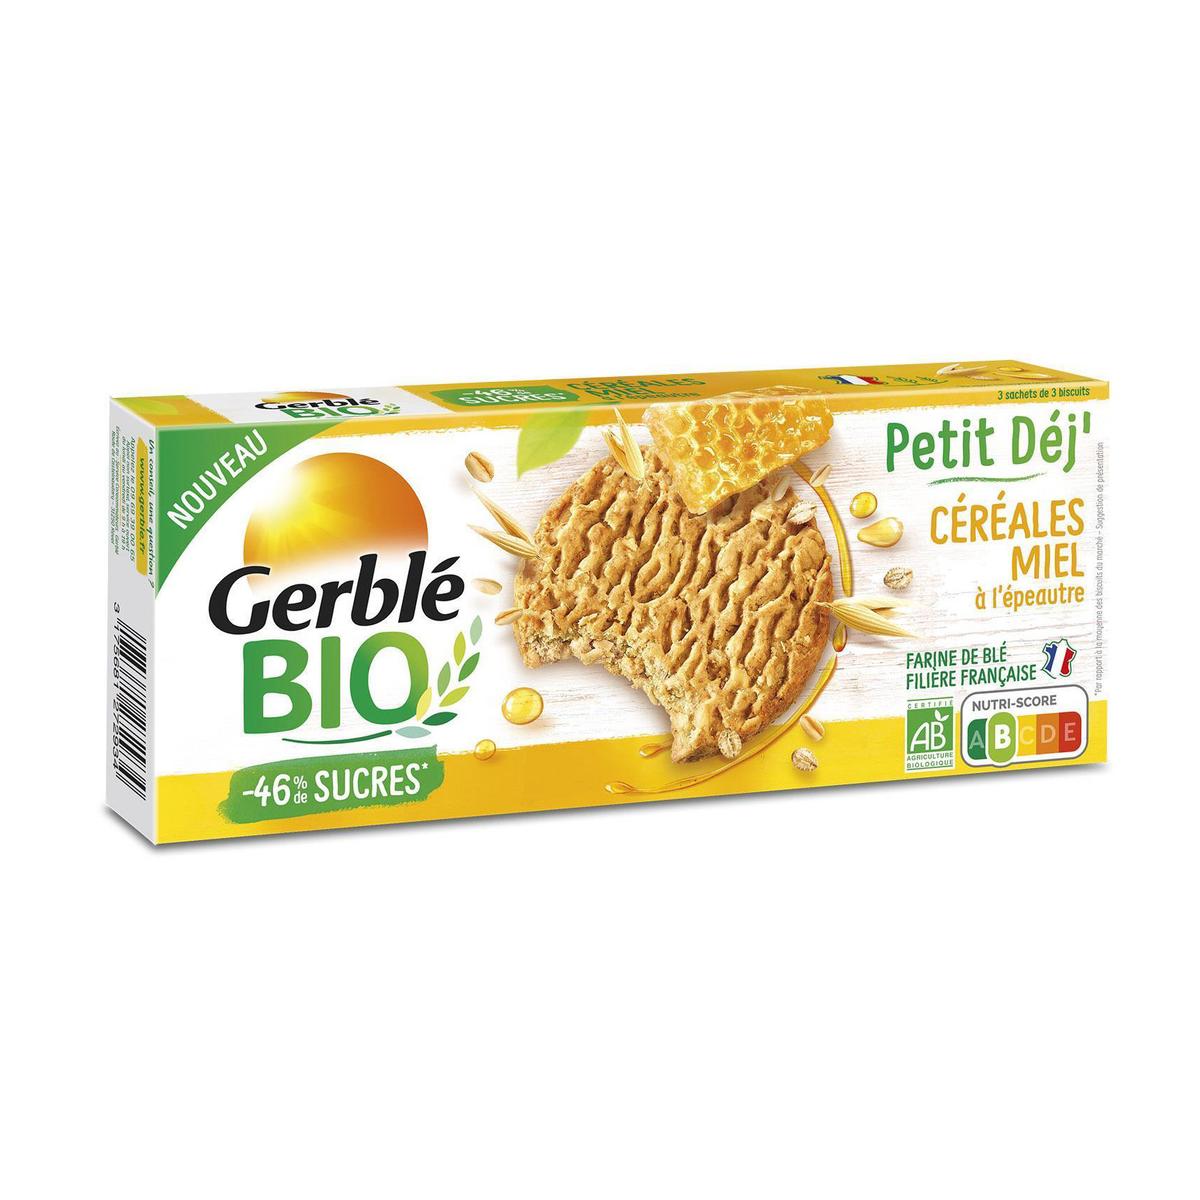 Gerblé Bio 9 Biscuits Petit déj' Céréales Miel Bio -46% de sucres en moins